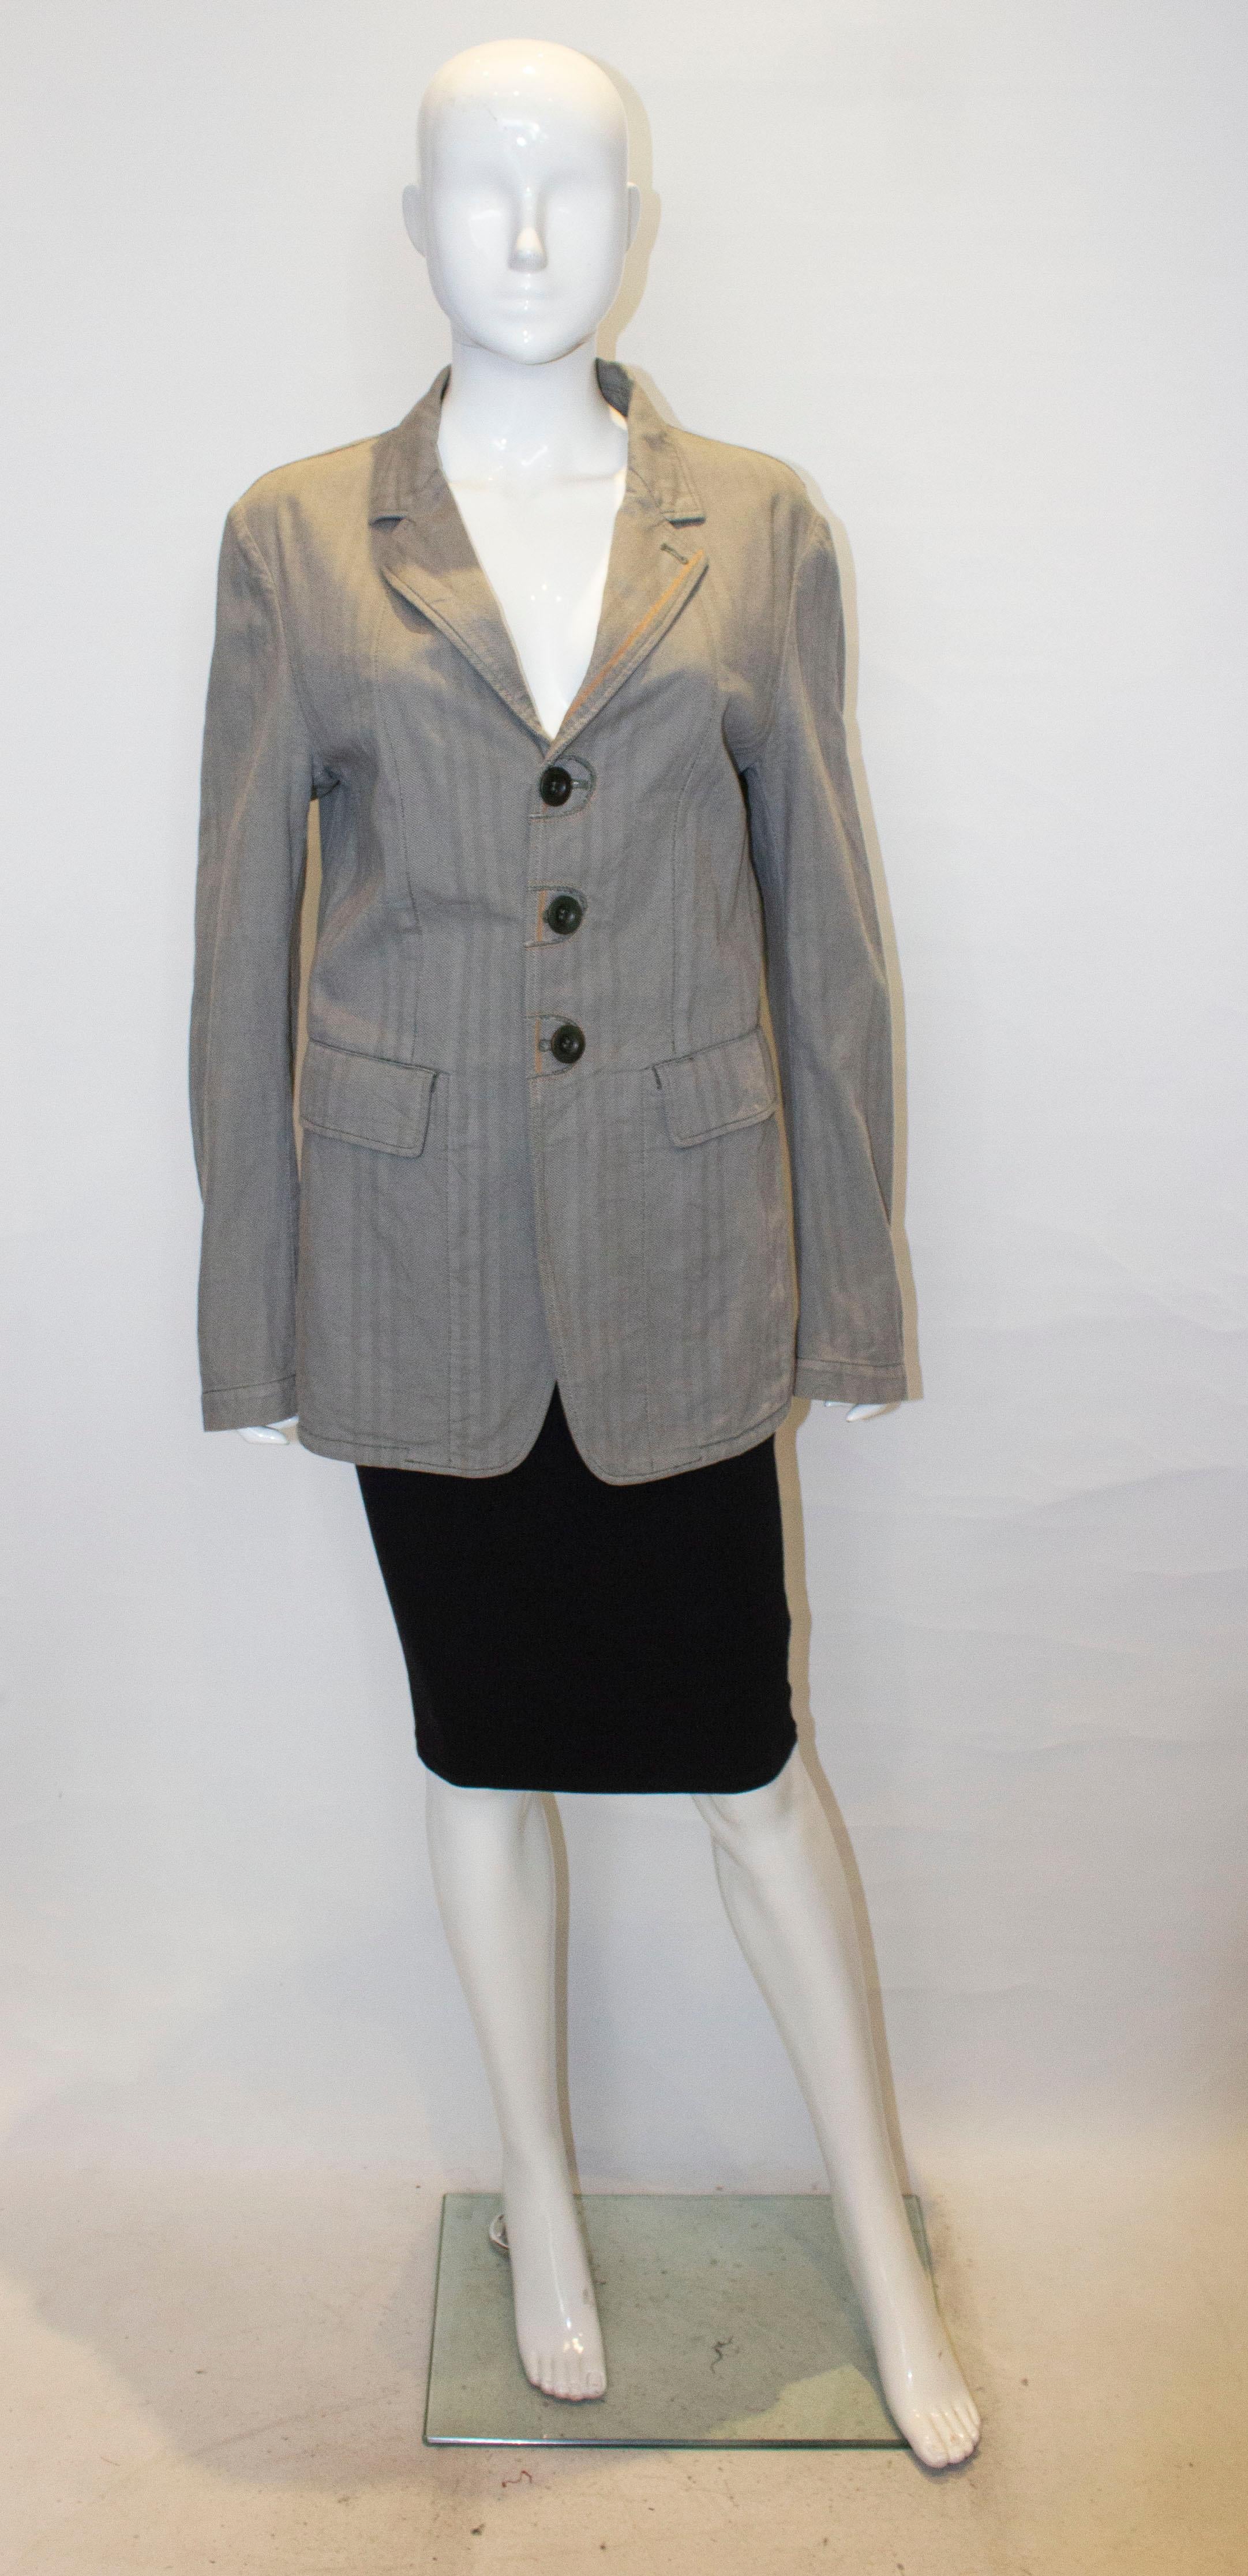 Eine schicke Baumwolljacke von Marithe Francois Girbaud.  Die Jacke ist aus einem interessanten Mischgewebe. Es ist ungefüttert, mit  drei Knöpfe auf der Vorderseite, zwei große Taschen auf der Vorderseite, eine Manschette mit einem Knopf und 7 ''